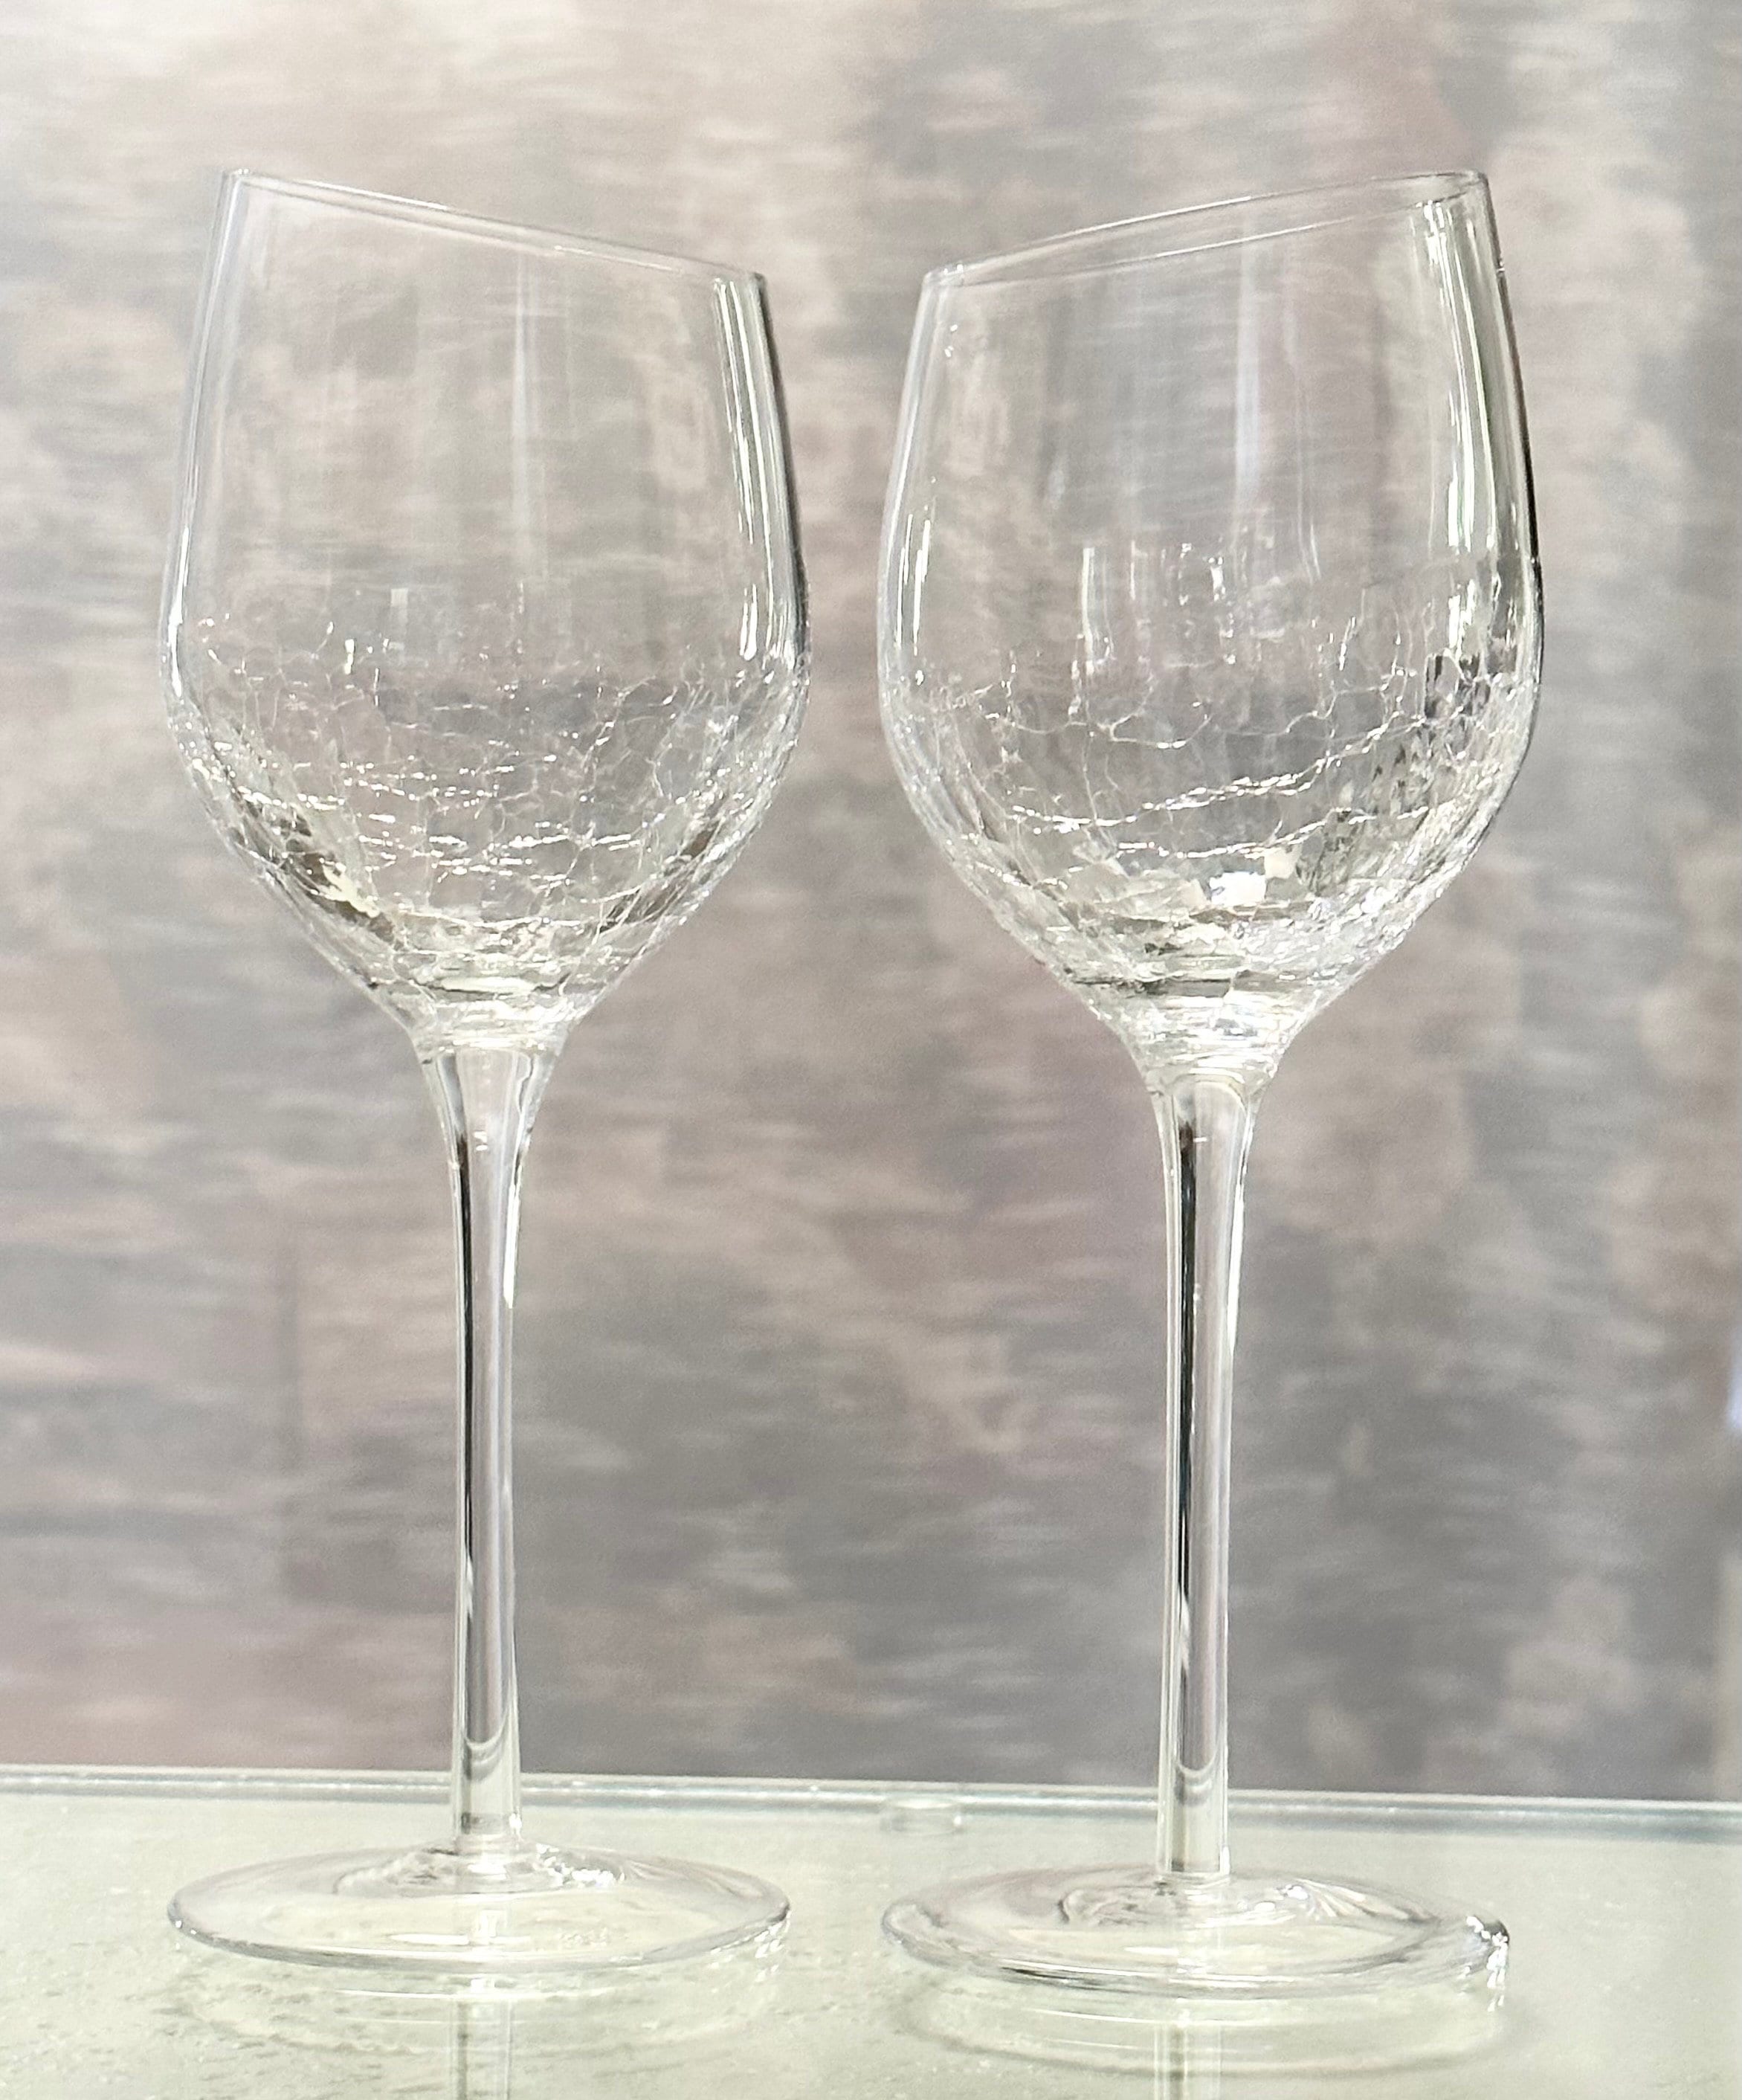 Set Of 2 Pier 1 Clear Crackle Angled Rim Red Wine Glasses Goblets 8 5/8  Slant